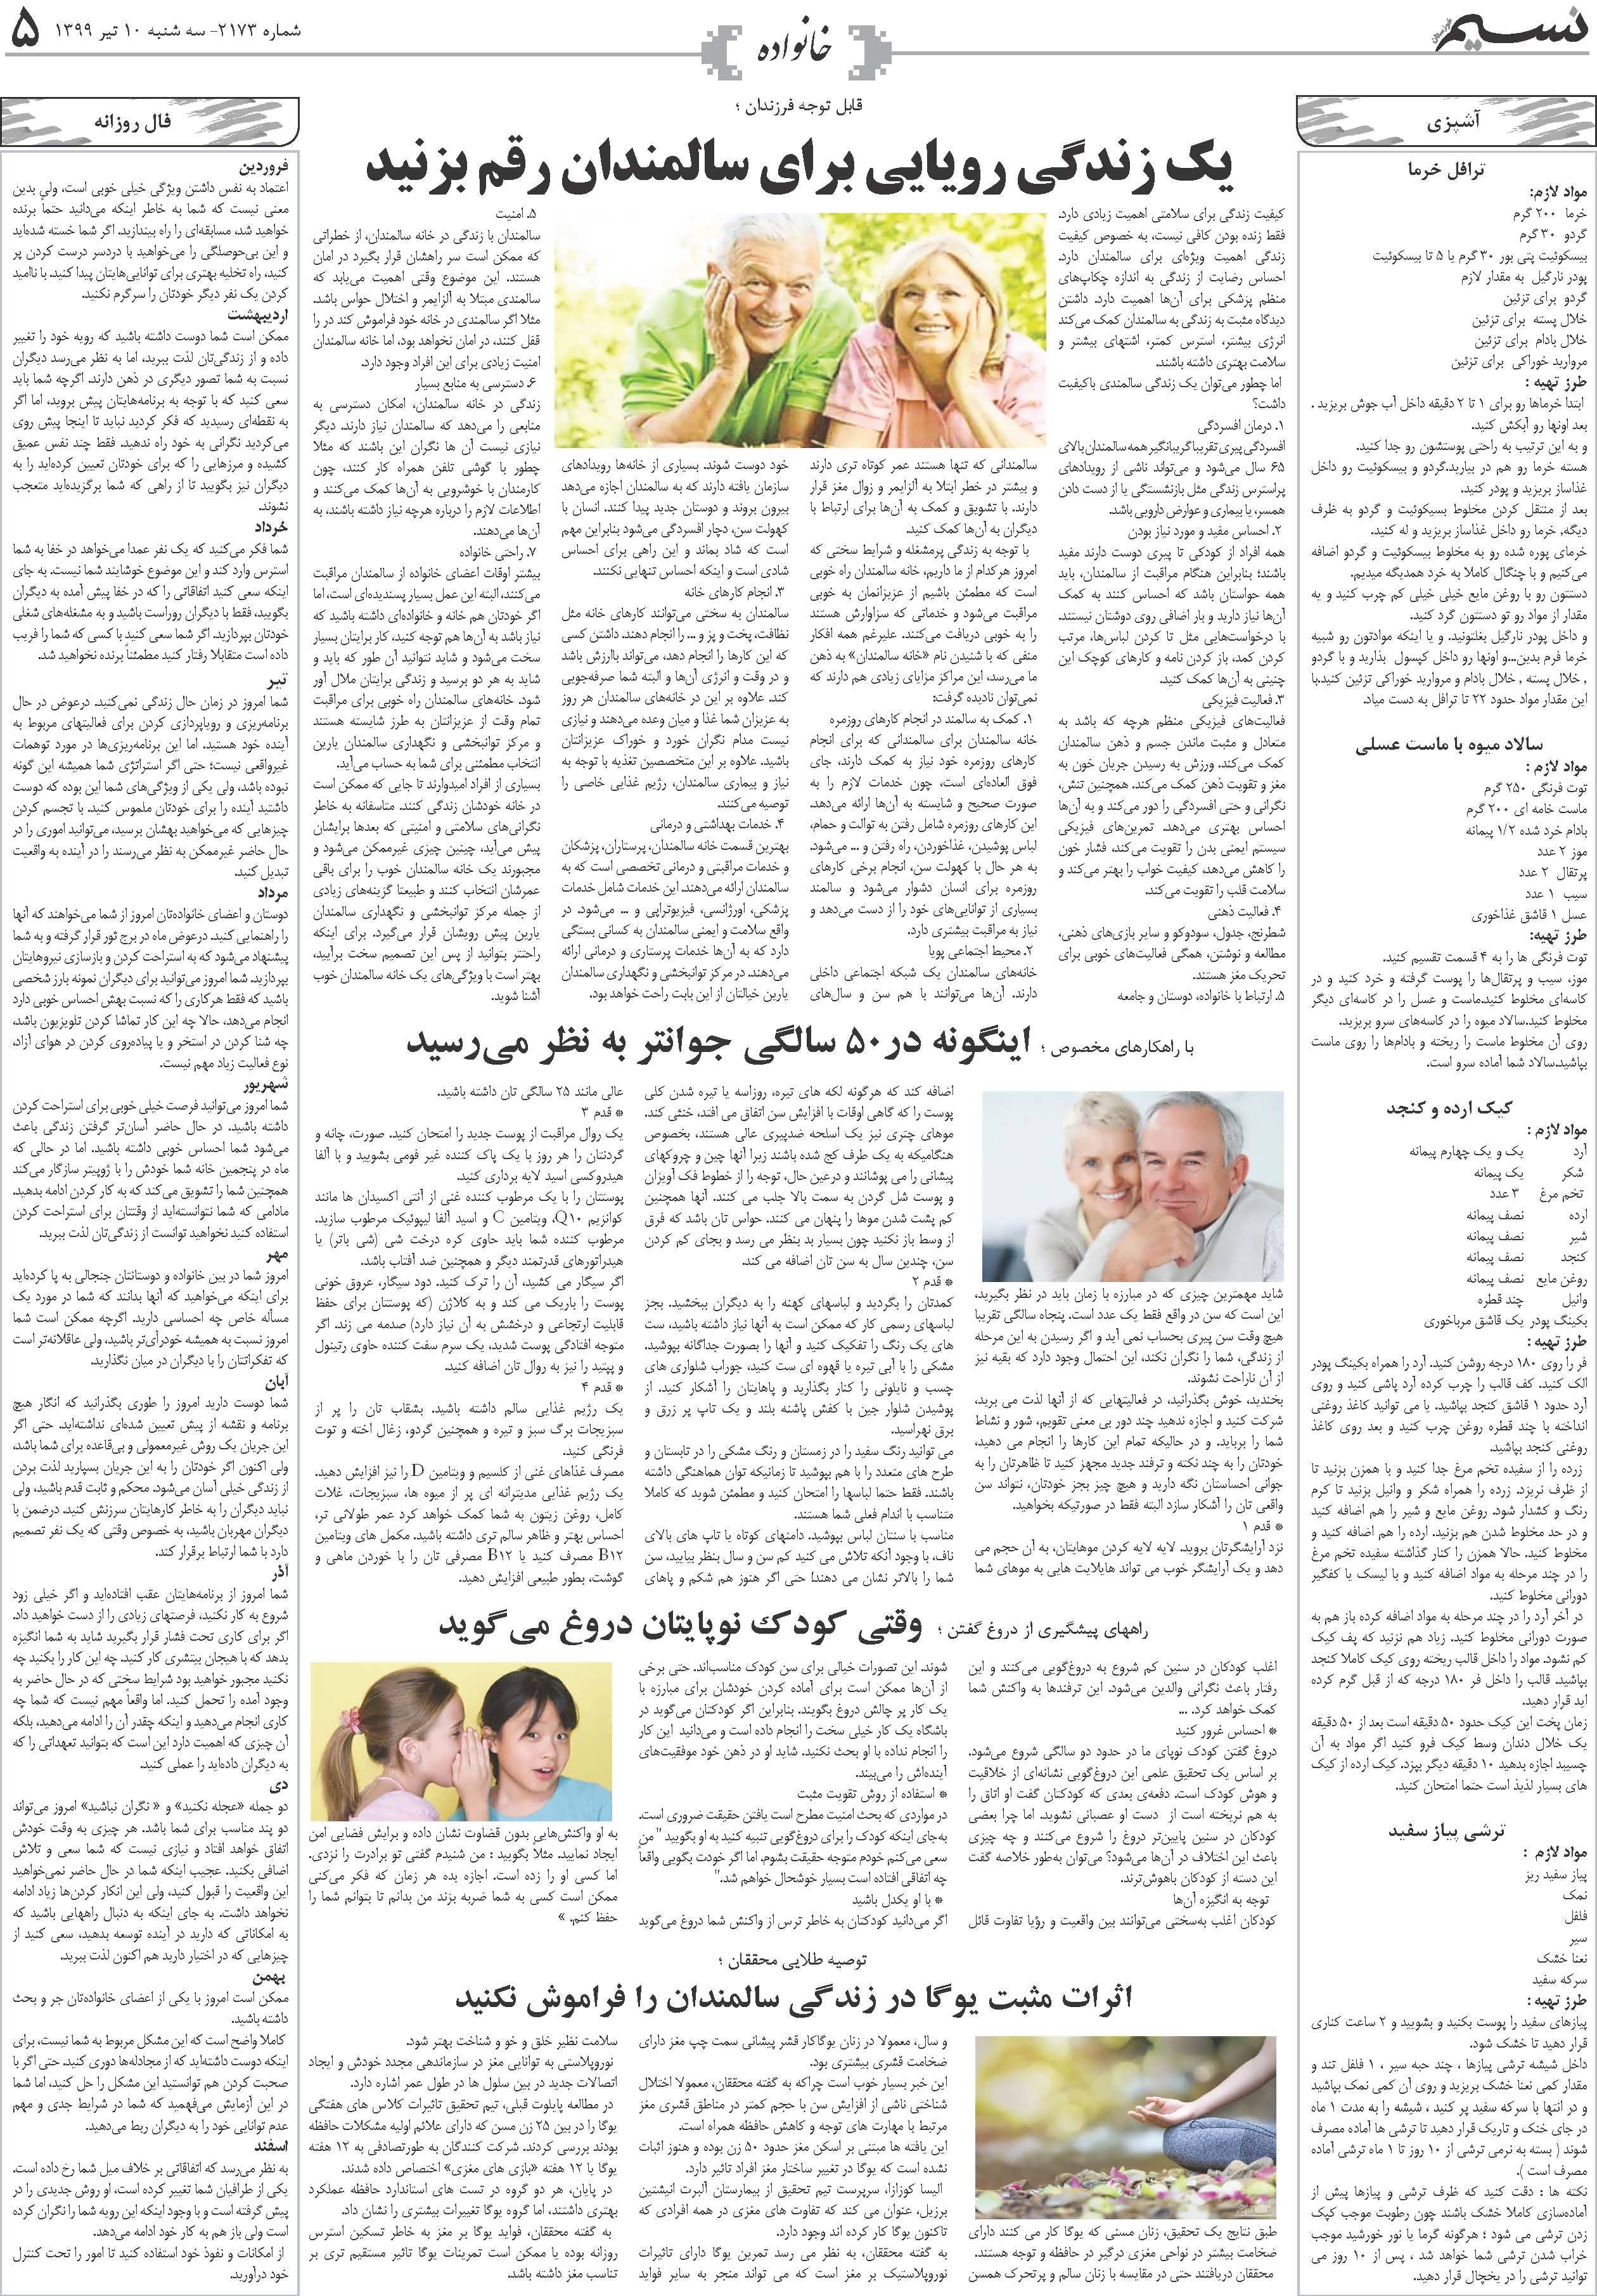 صفحه خانواده روزنامه نسیم شماره 2173